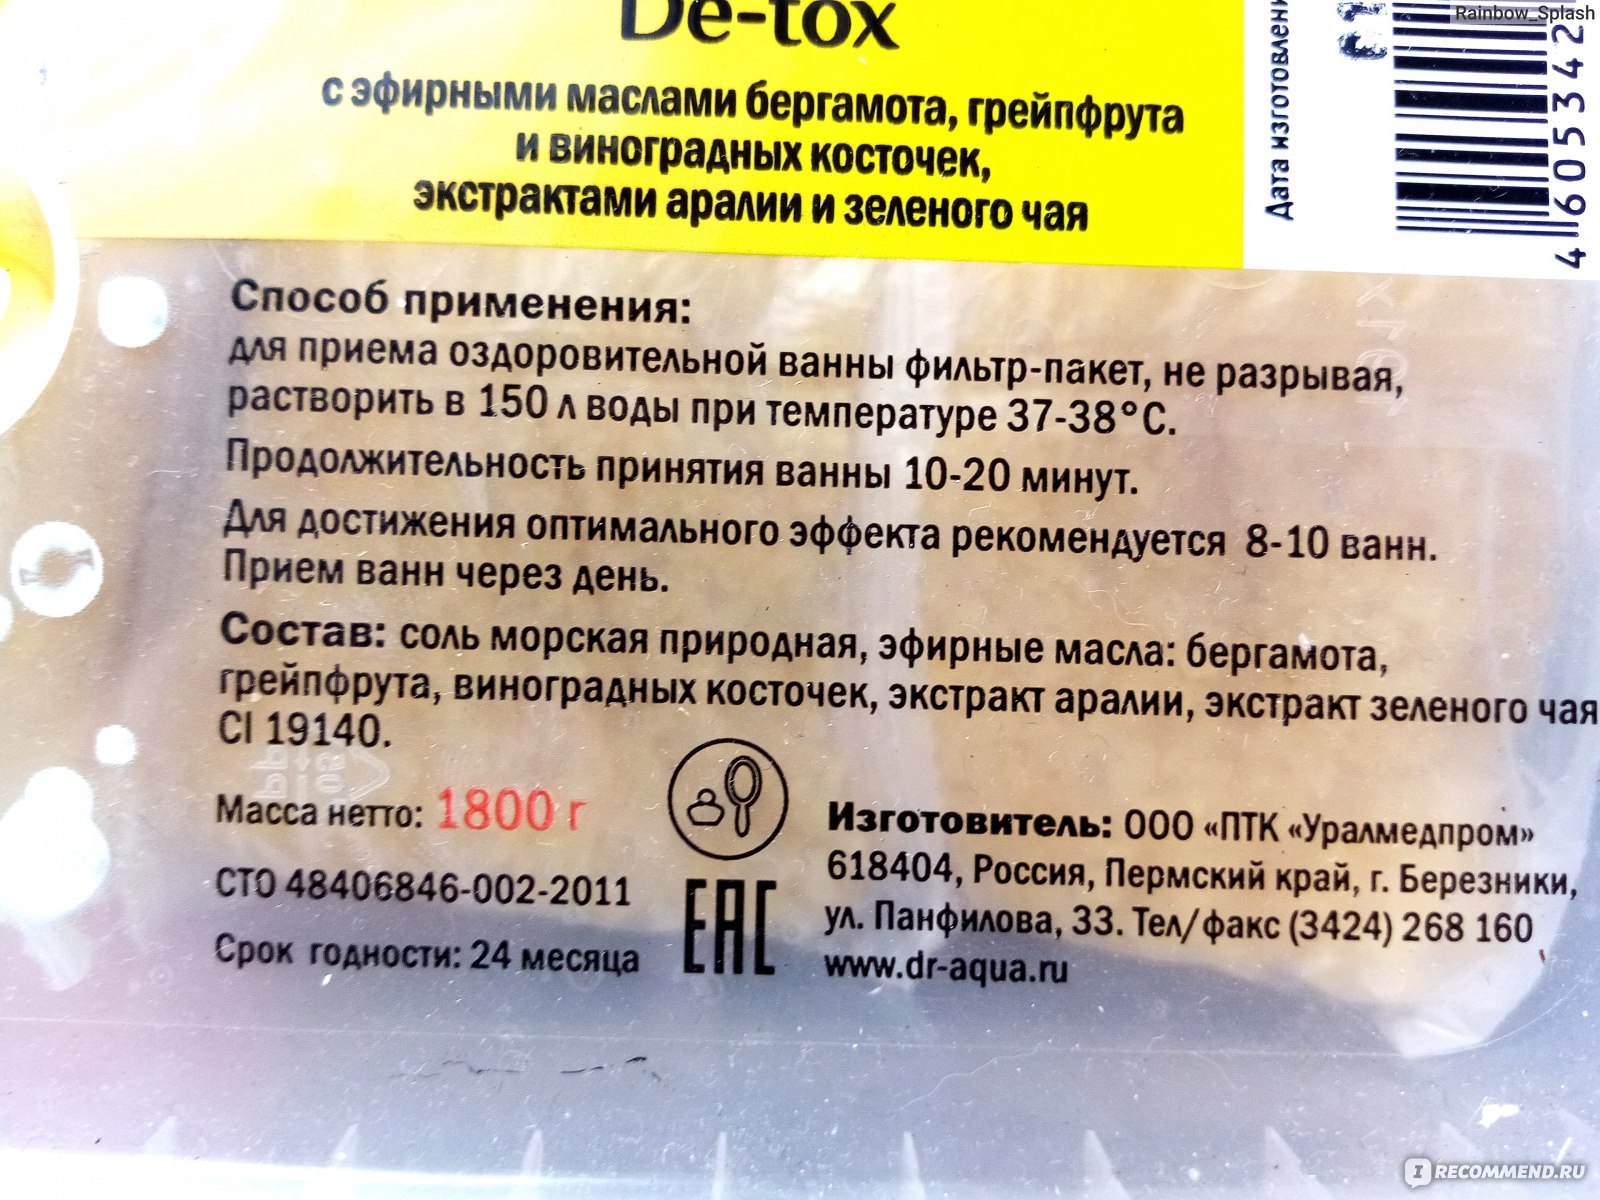 Соль для ванн похудение Detox отзывы